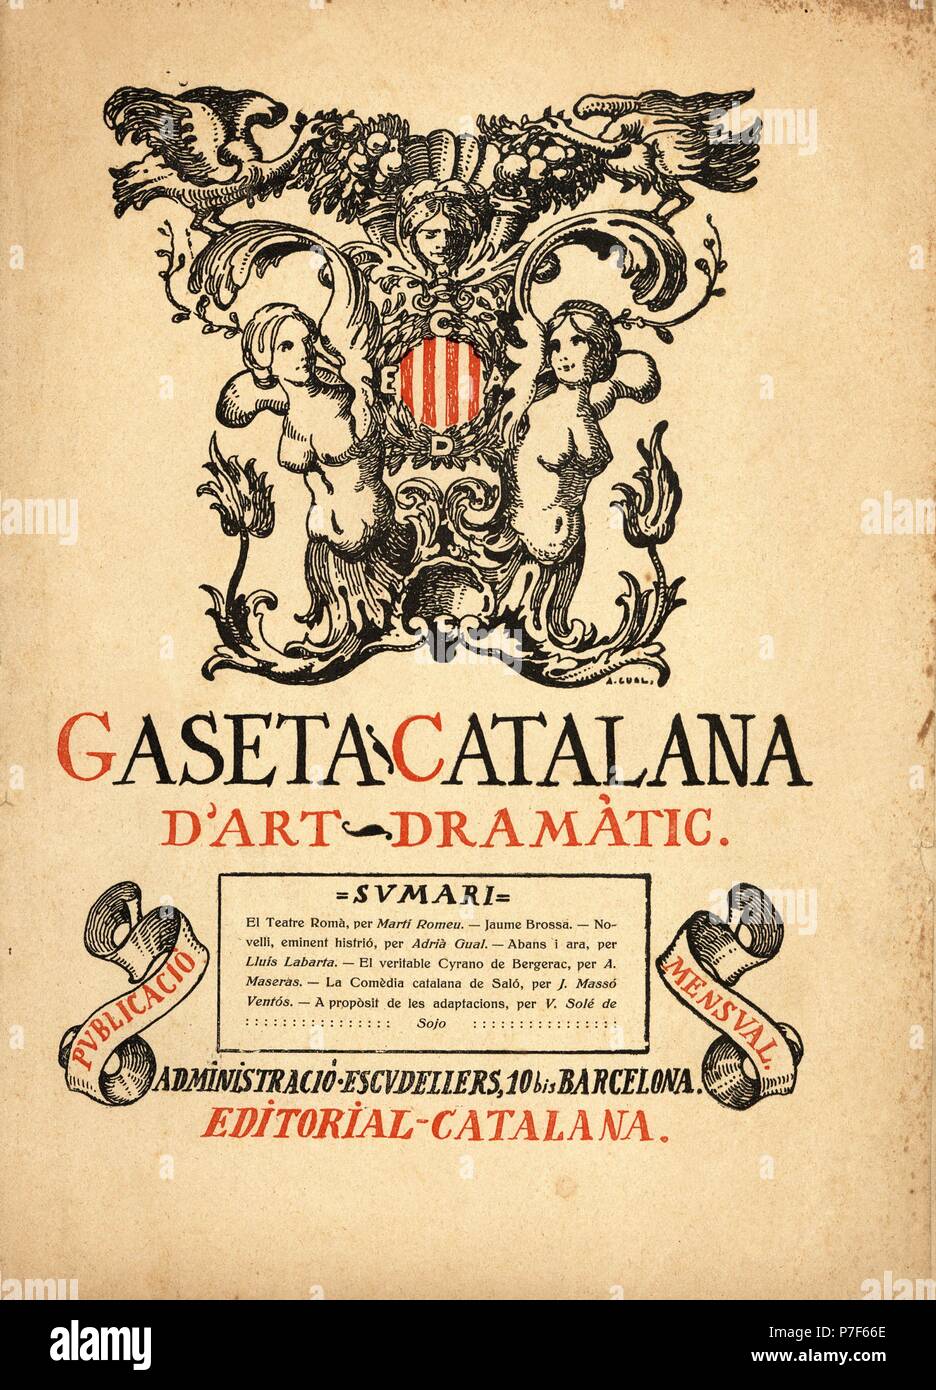 Portada de la revista mensual de arte dramático 'Gaseta Catalana', del 15 febrero 1919. Editada en Barcelona. Stock Photo